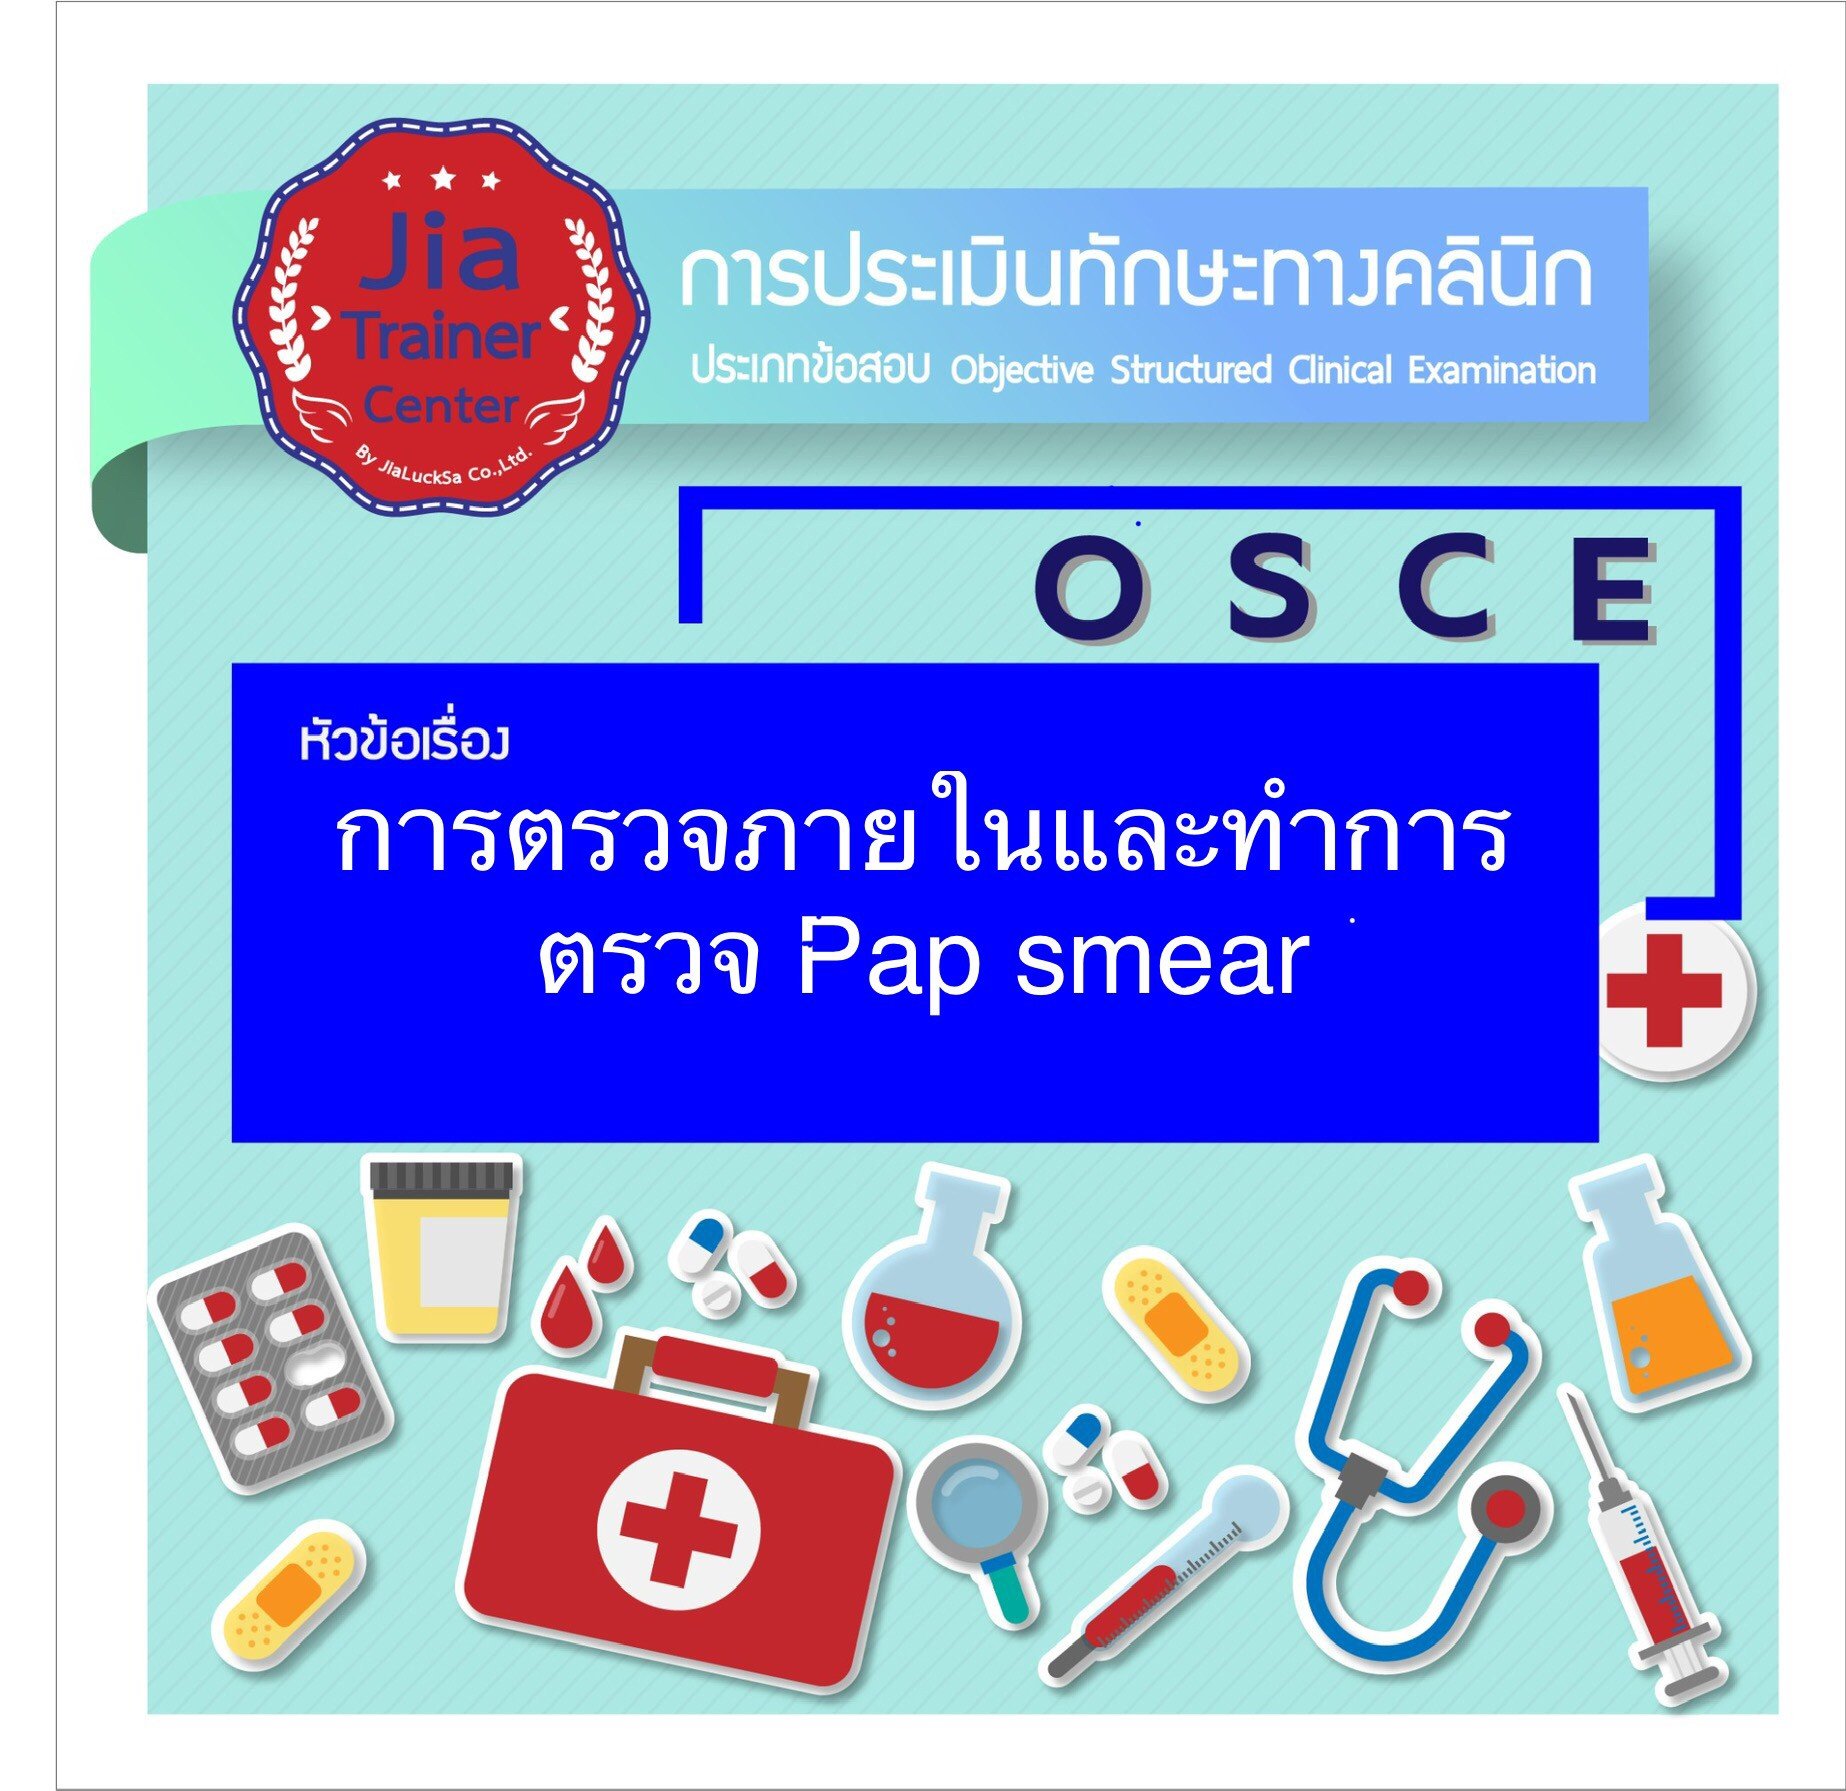 Osce-การตรวจภายในและทำการตรวจ Pap Smear